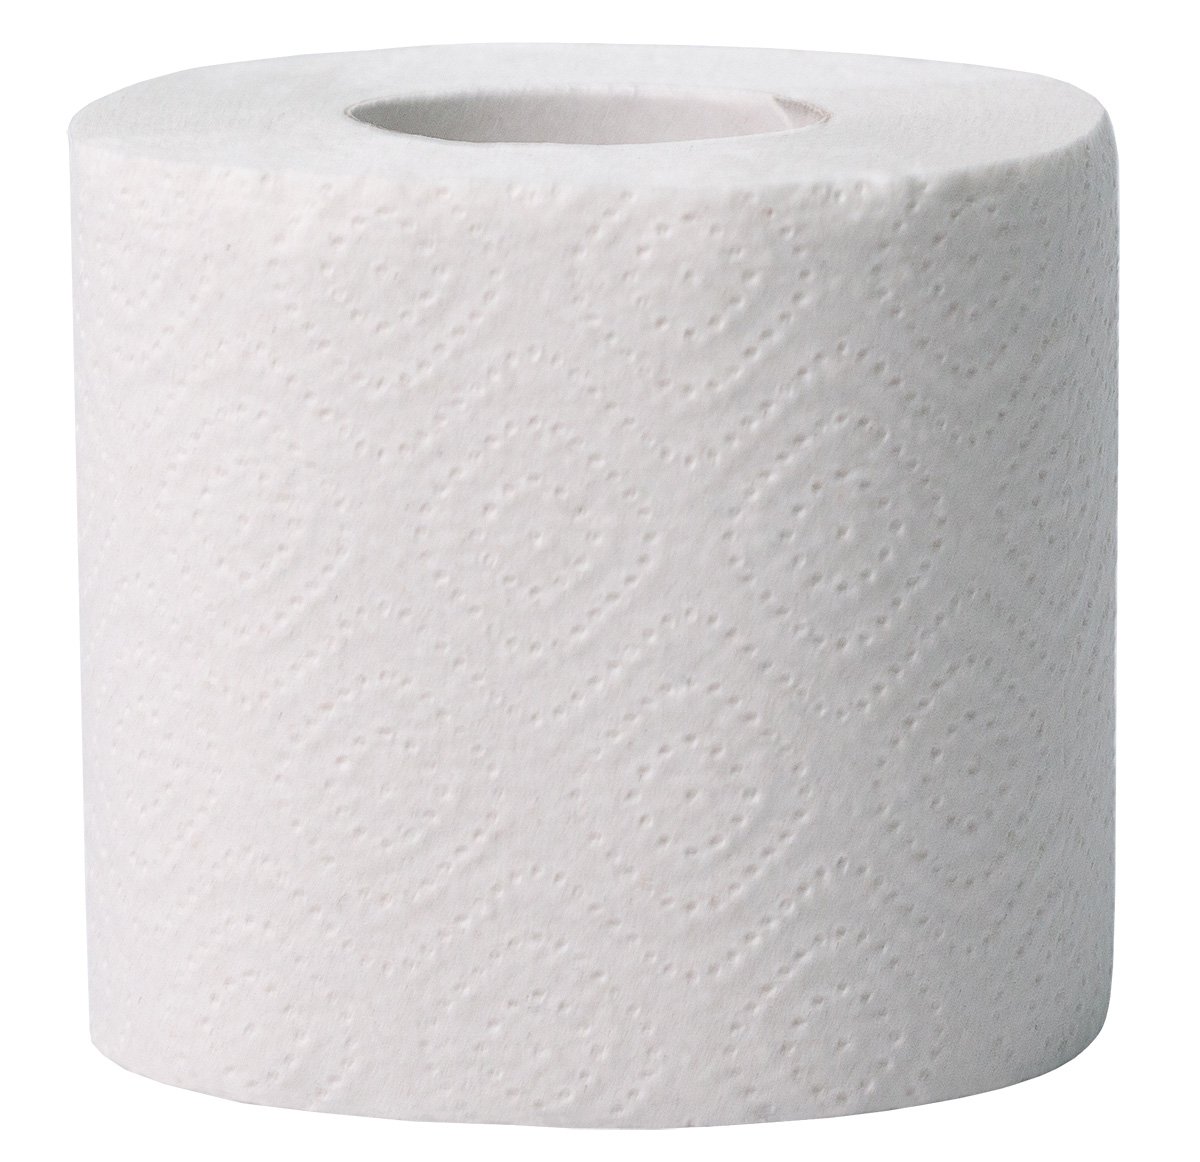 Туалетная бумага Торк Комфорт, Т4, 2-слойная, белая, 23 метра, 4 рулона в упаковке